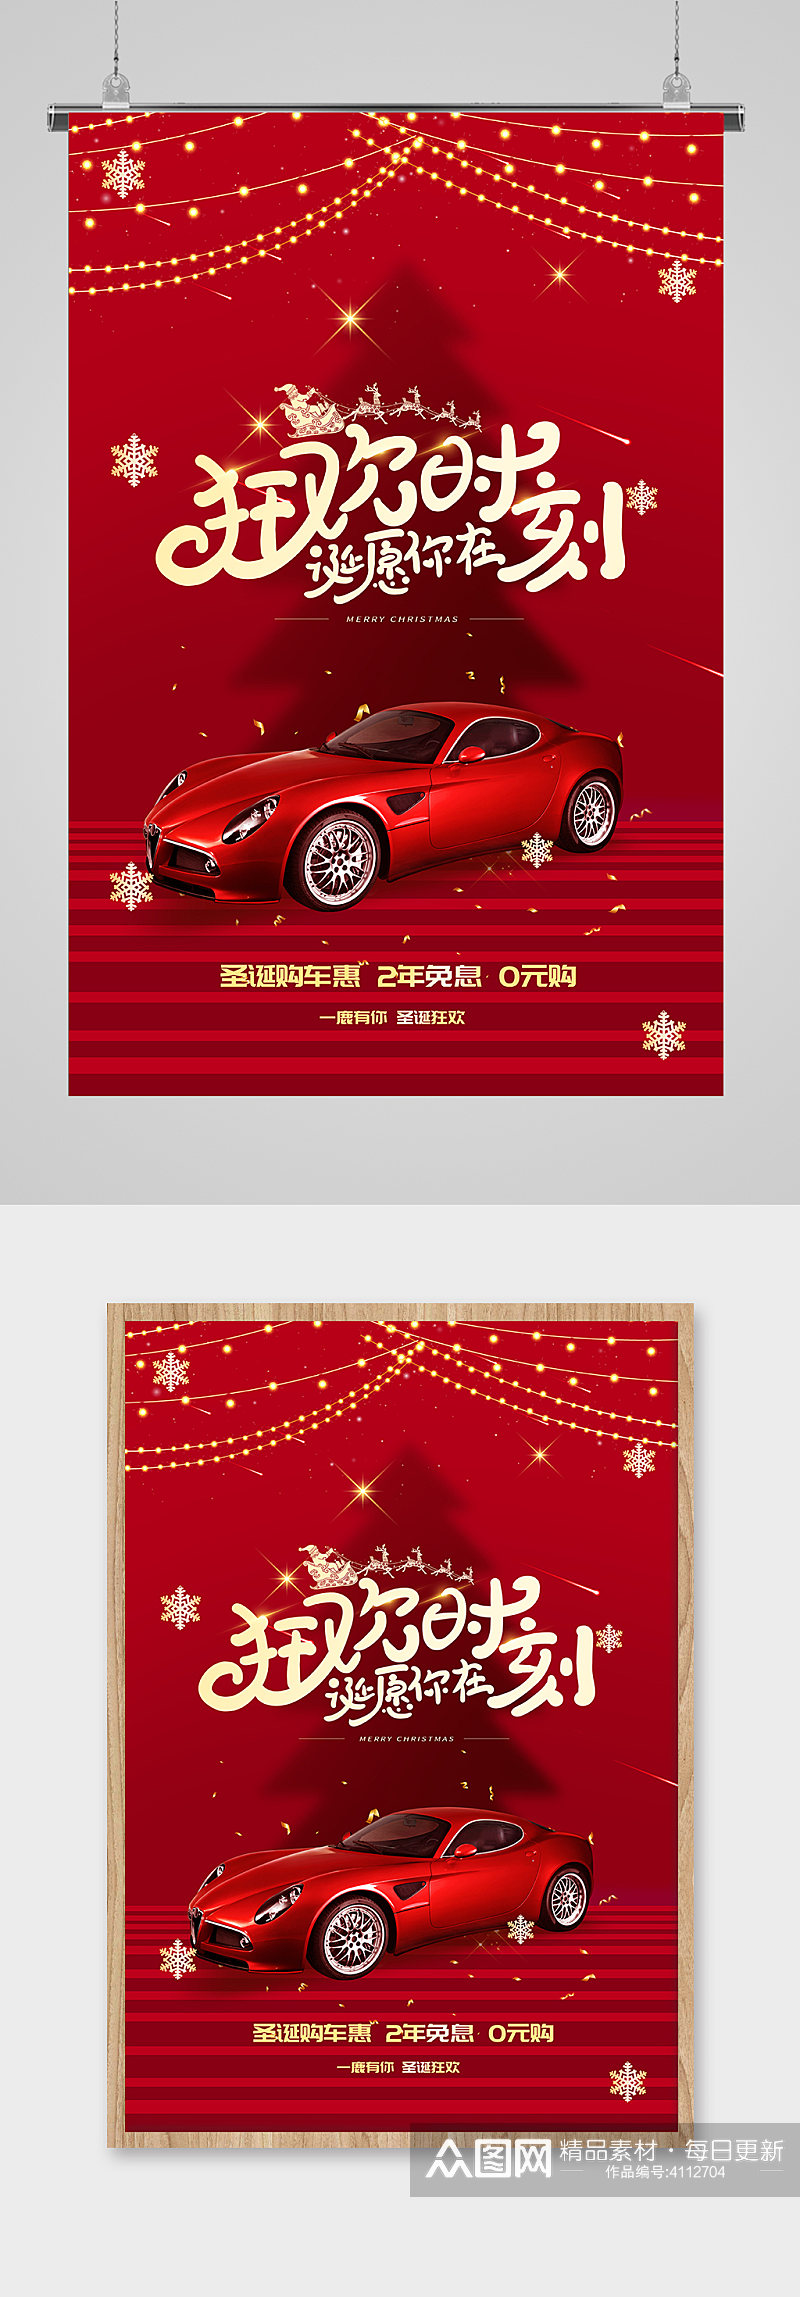 大气圣诞节汽车促销宣传海报素材